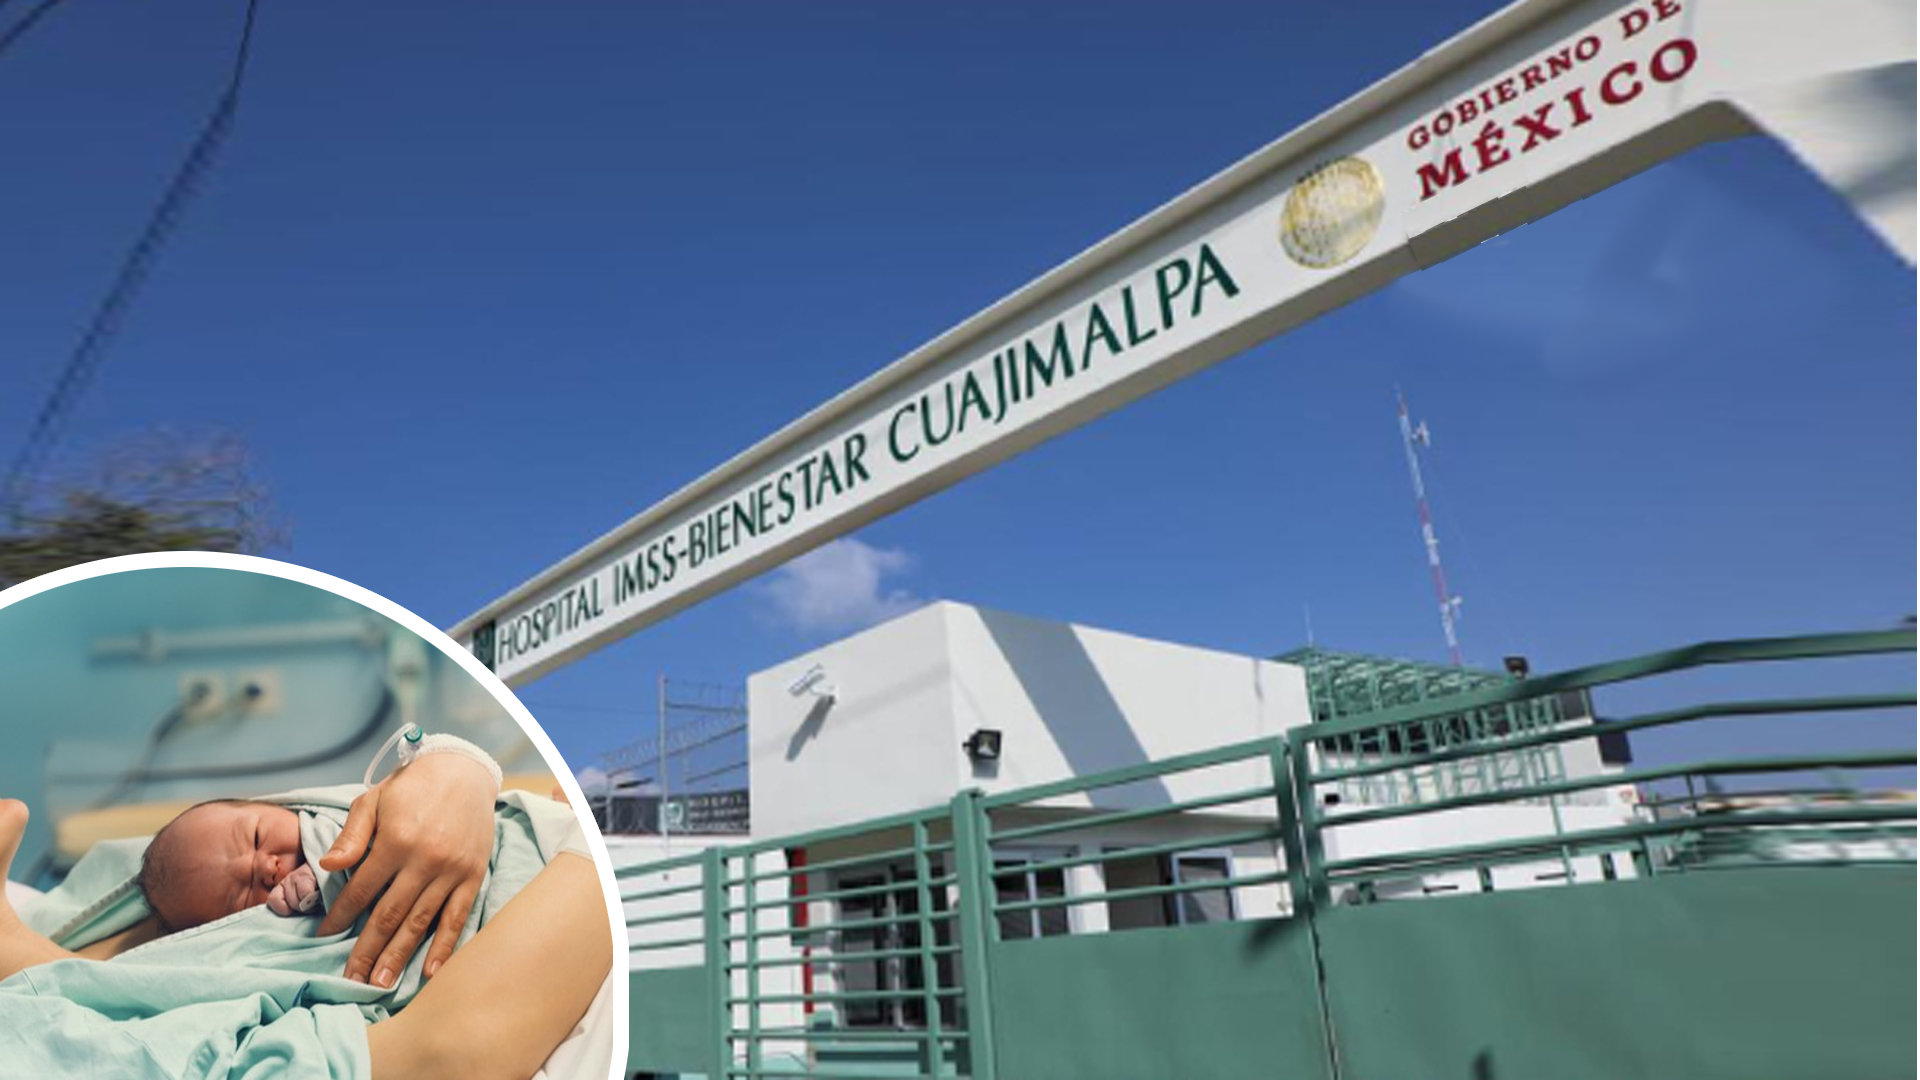 A tres días de su inauguración, Hospital IMSS-Bienestar Cuajimalpa, registra su primer nacimiento